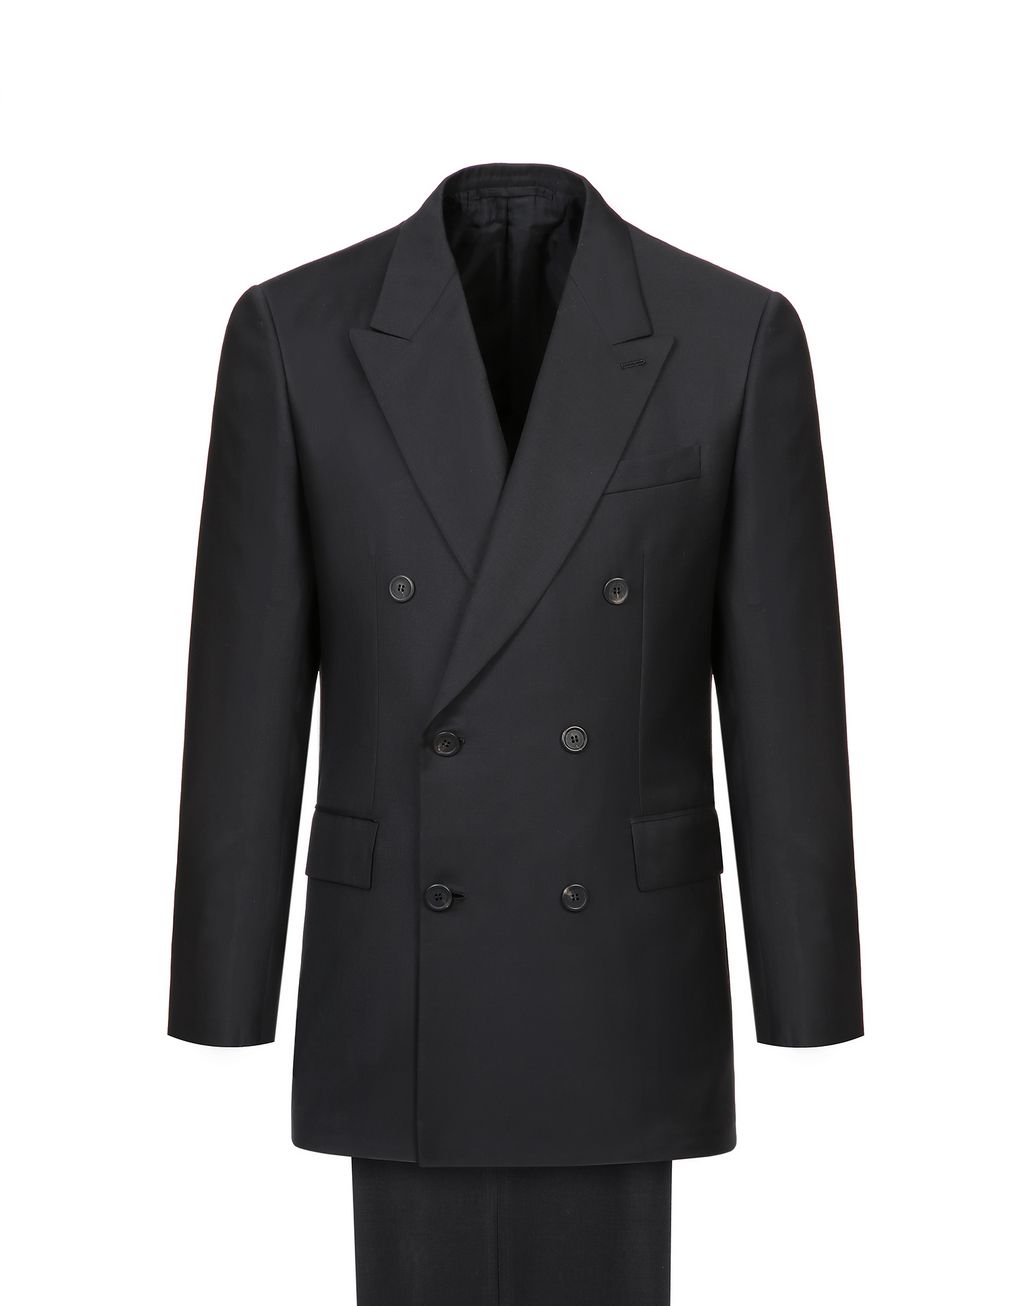 Brioni Men's Suits & Jackets | Brioni Official Online Store